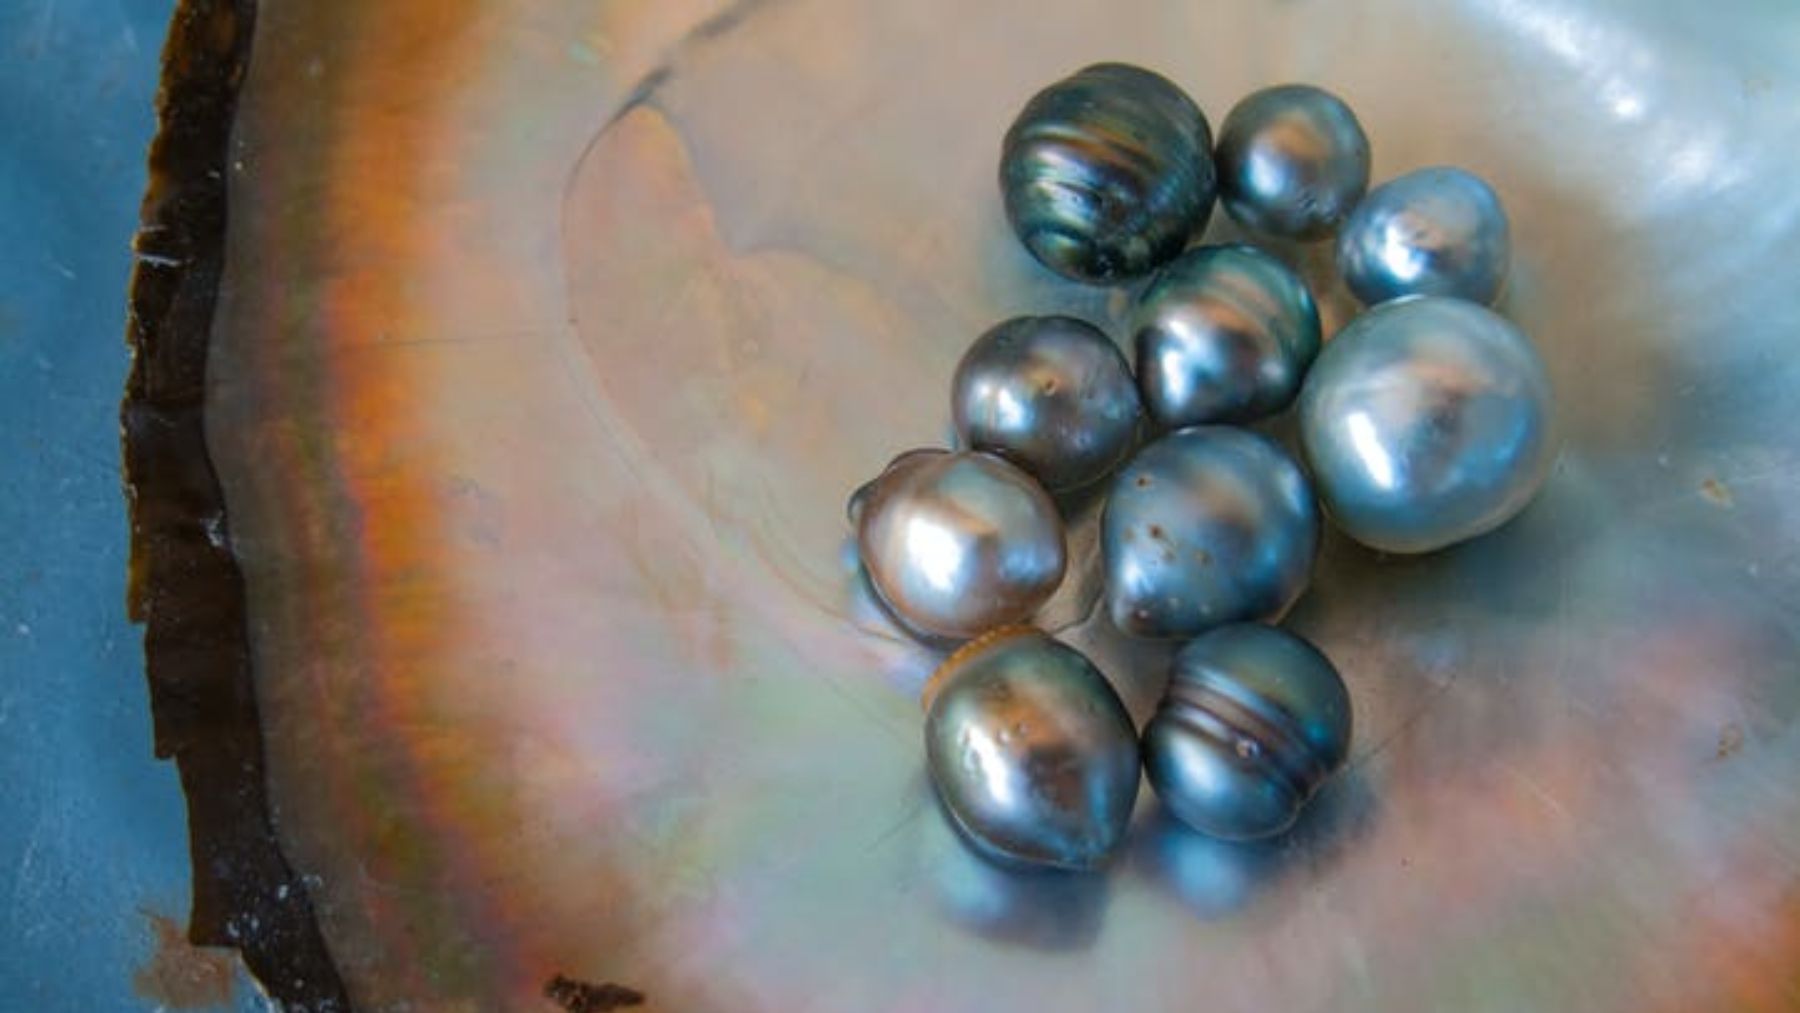 Descubre cómo se forman las perlas naturales